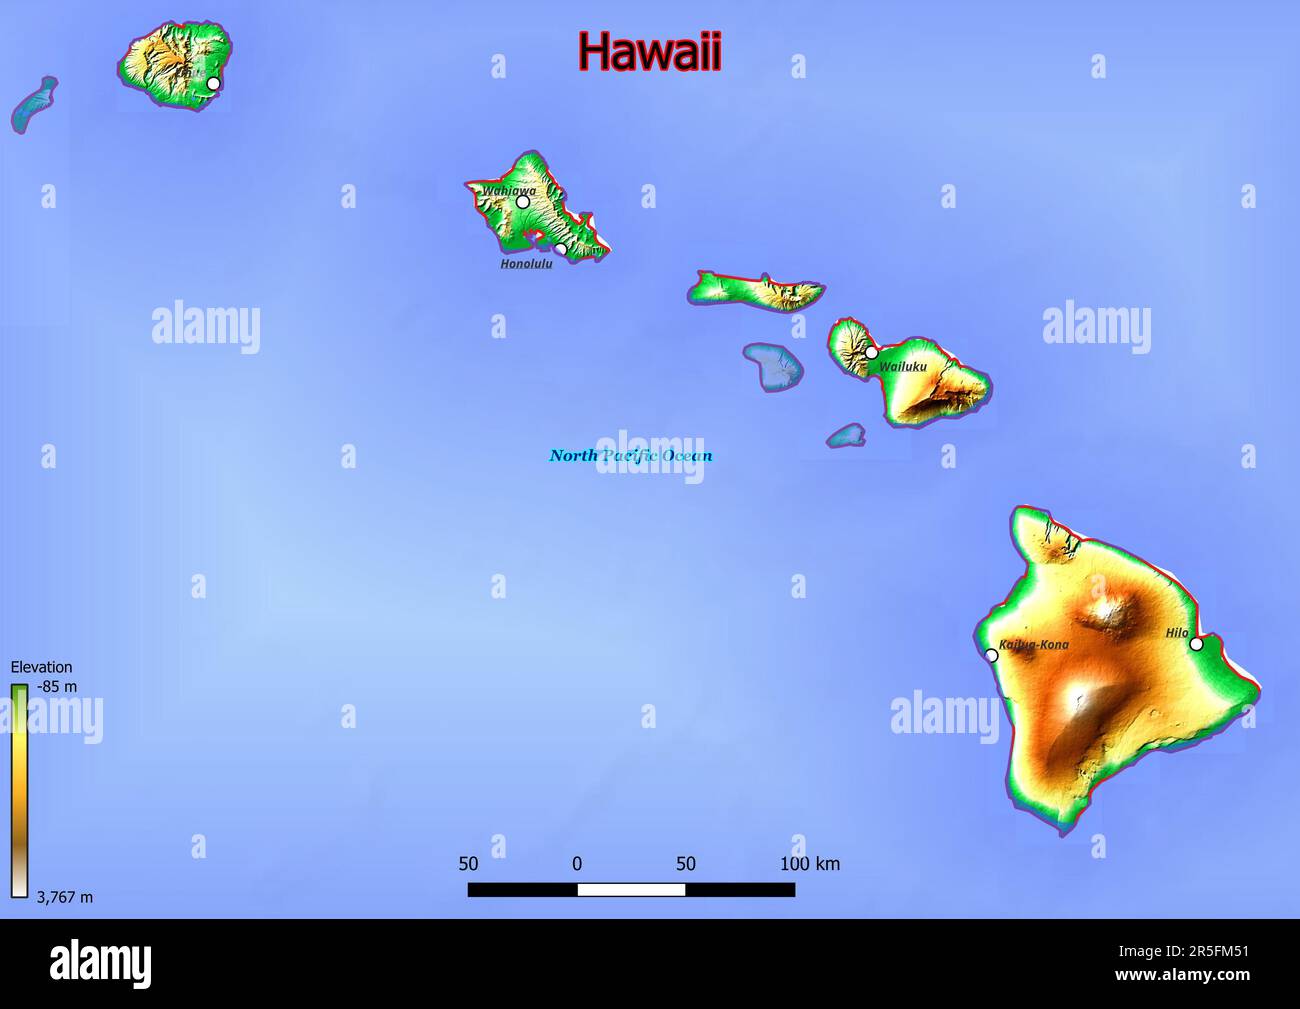 La mappa fisica delle Hawaii mostra un terreno variegato con colline ondulate, fertili valli fluviali e fitte foreste. Foto Stock